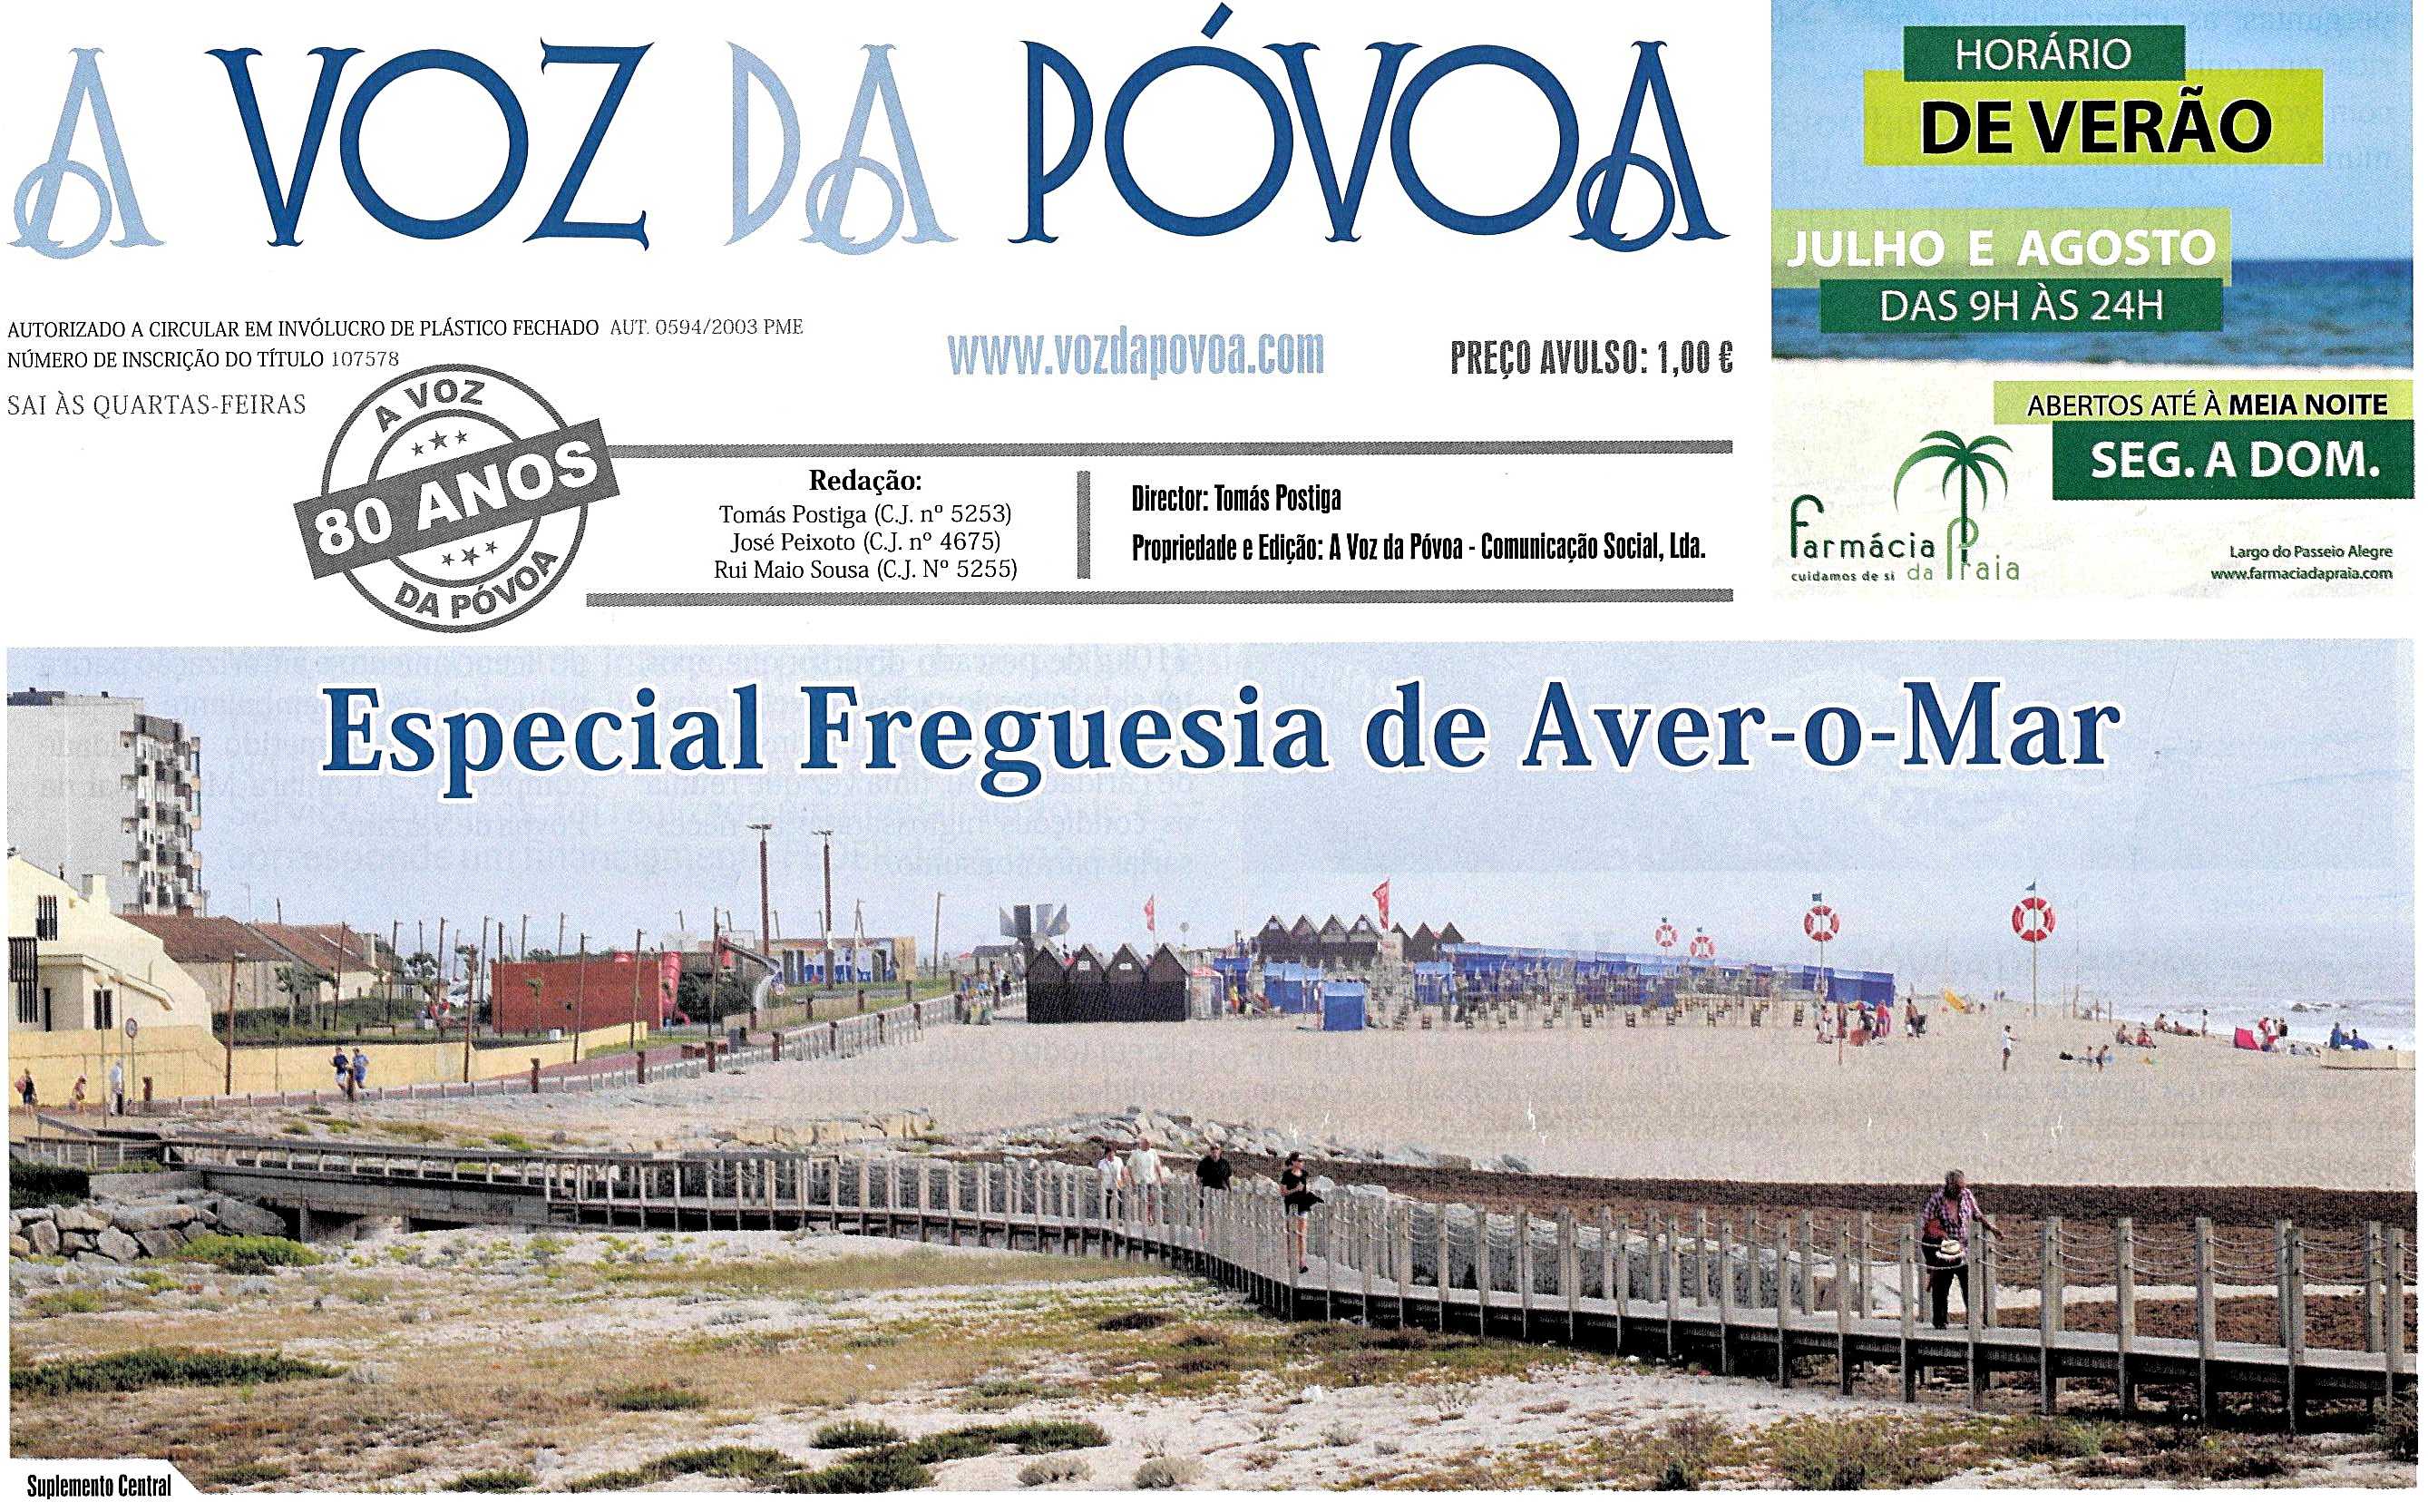 Especial Informação sobre a Freguesia de Aver-o-Mar no jornal A Voz da Póvoa